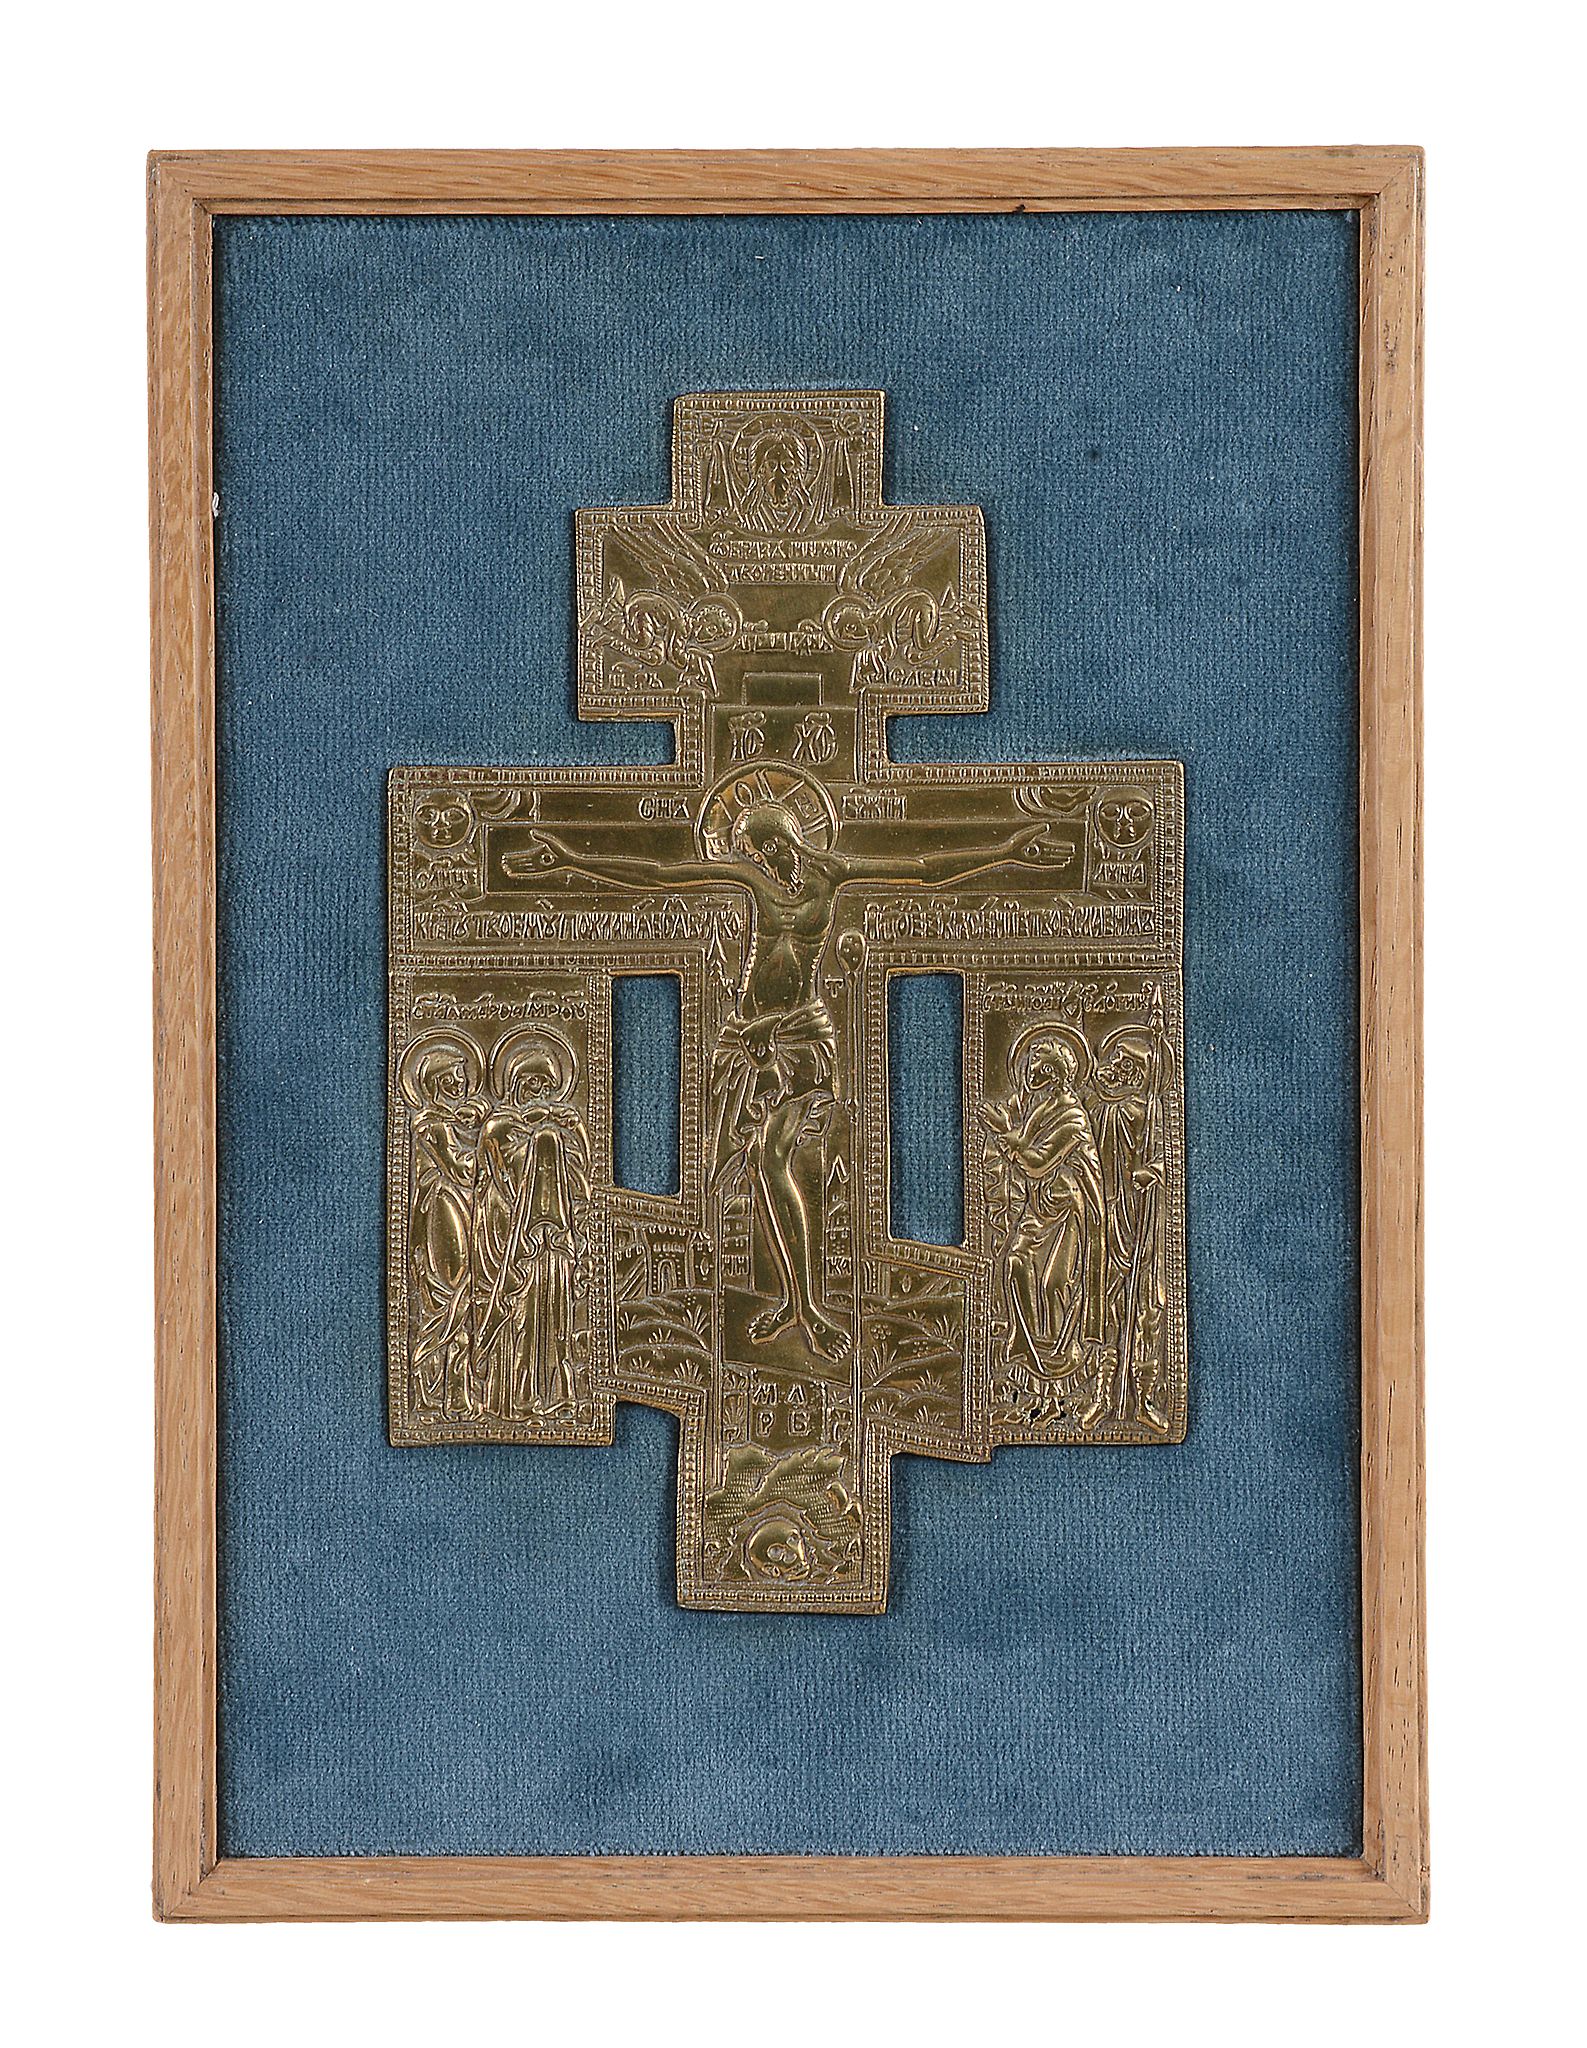 A Russian relief cast brass cross, Christ Crucified, late 18th century   A Russian relief cast brass